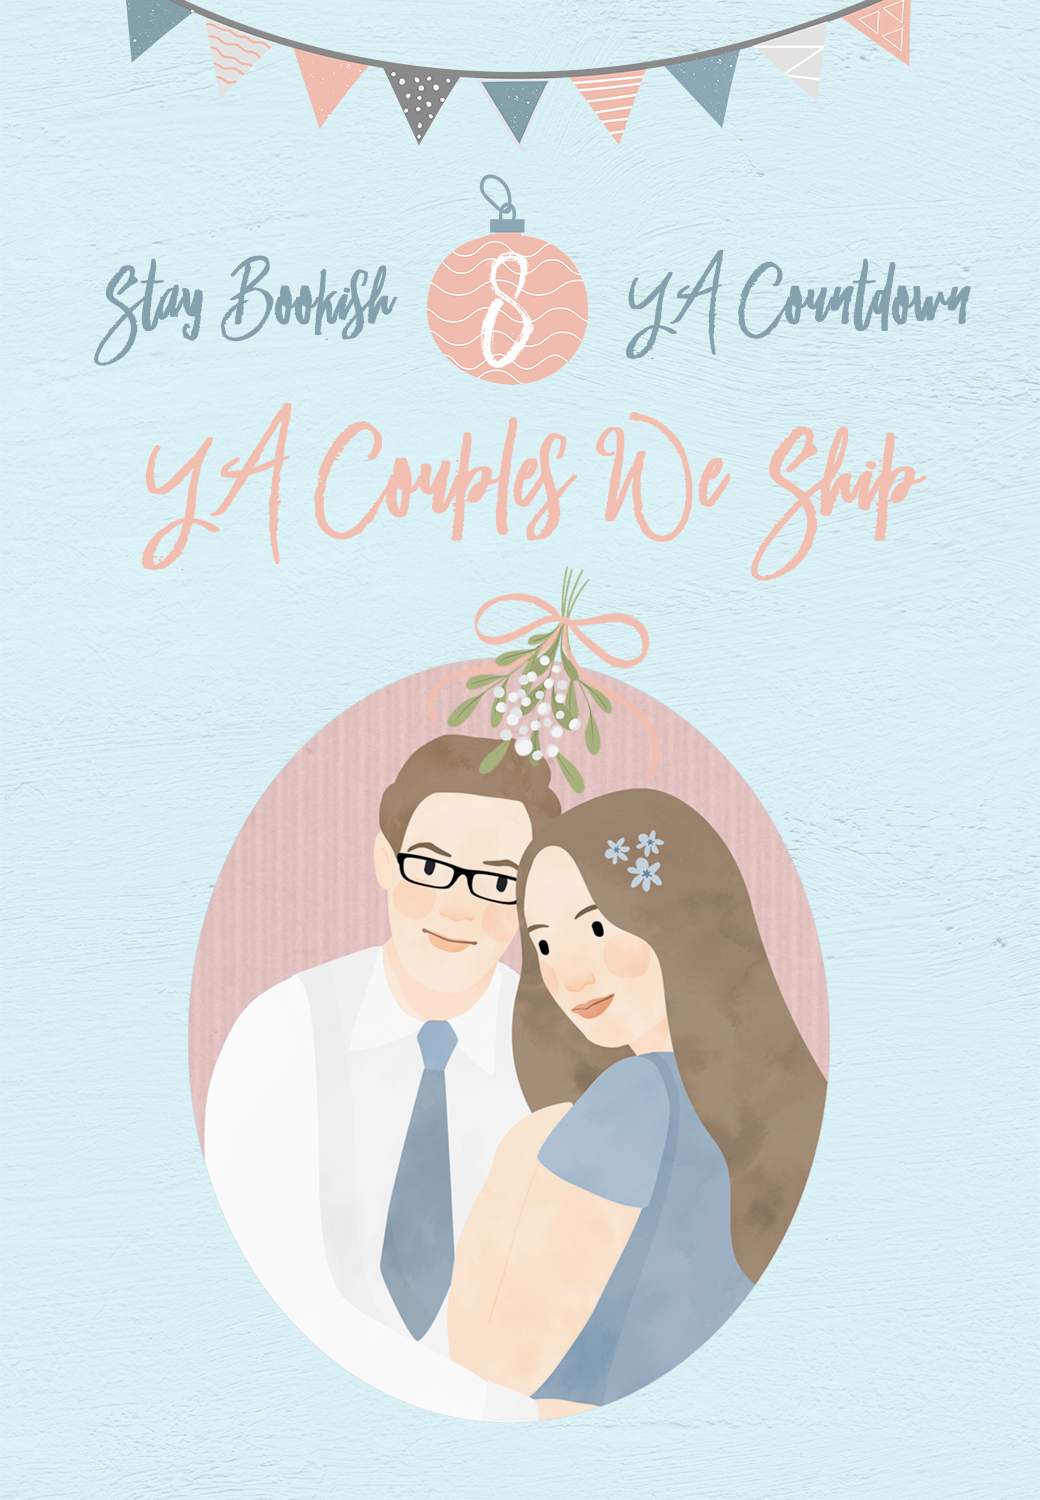 YA Countdown - 8 YA Couples We Ship